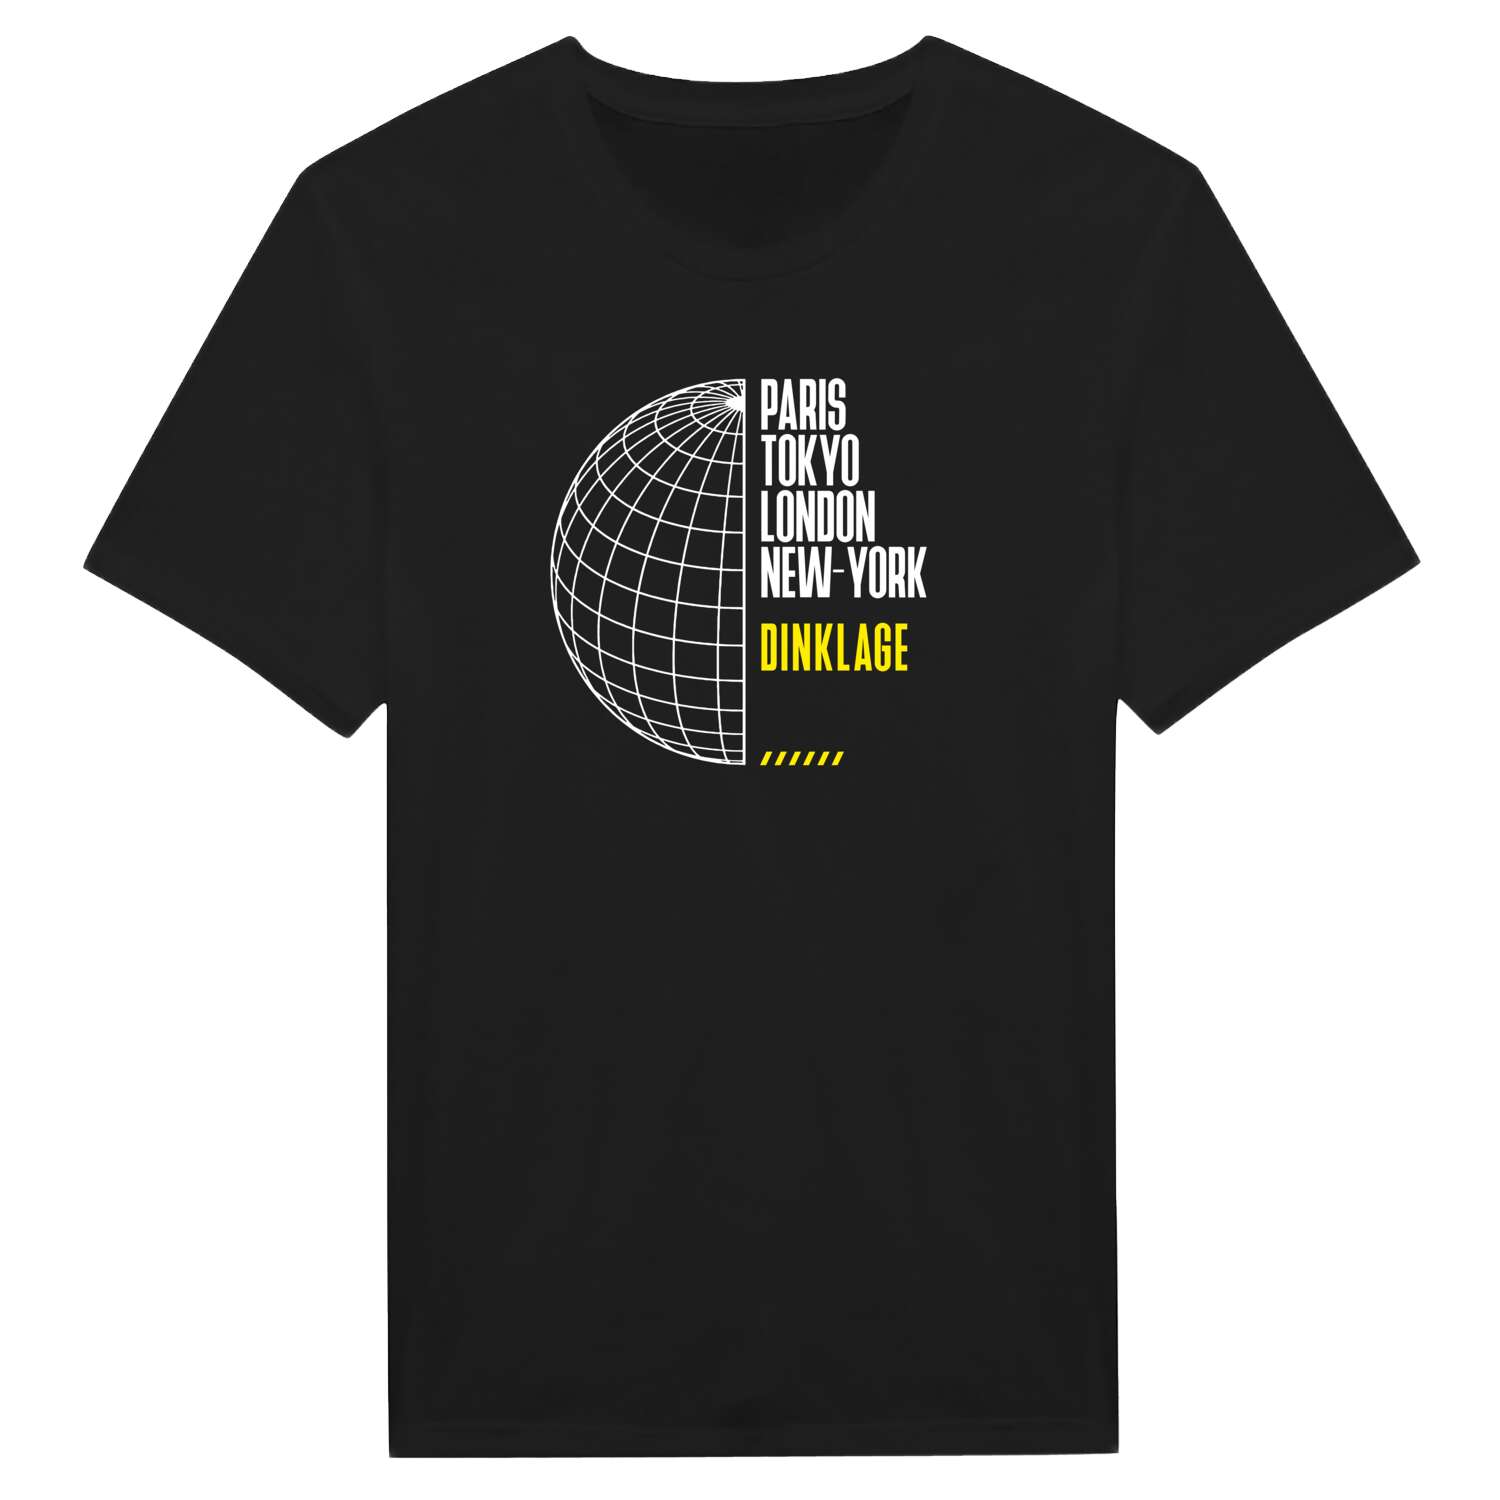 Dinklage T-Shirt »Paris Tokyo London«